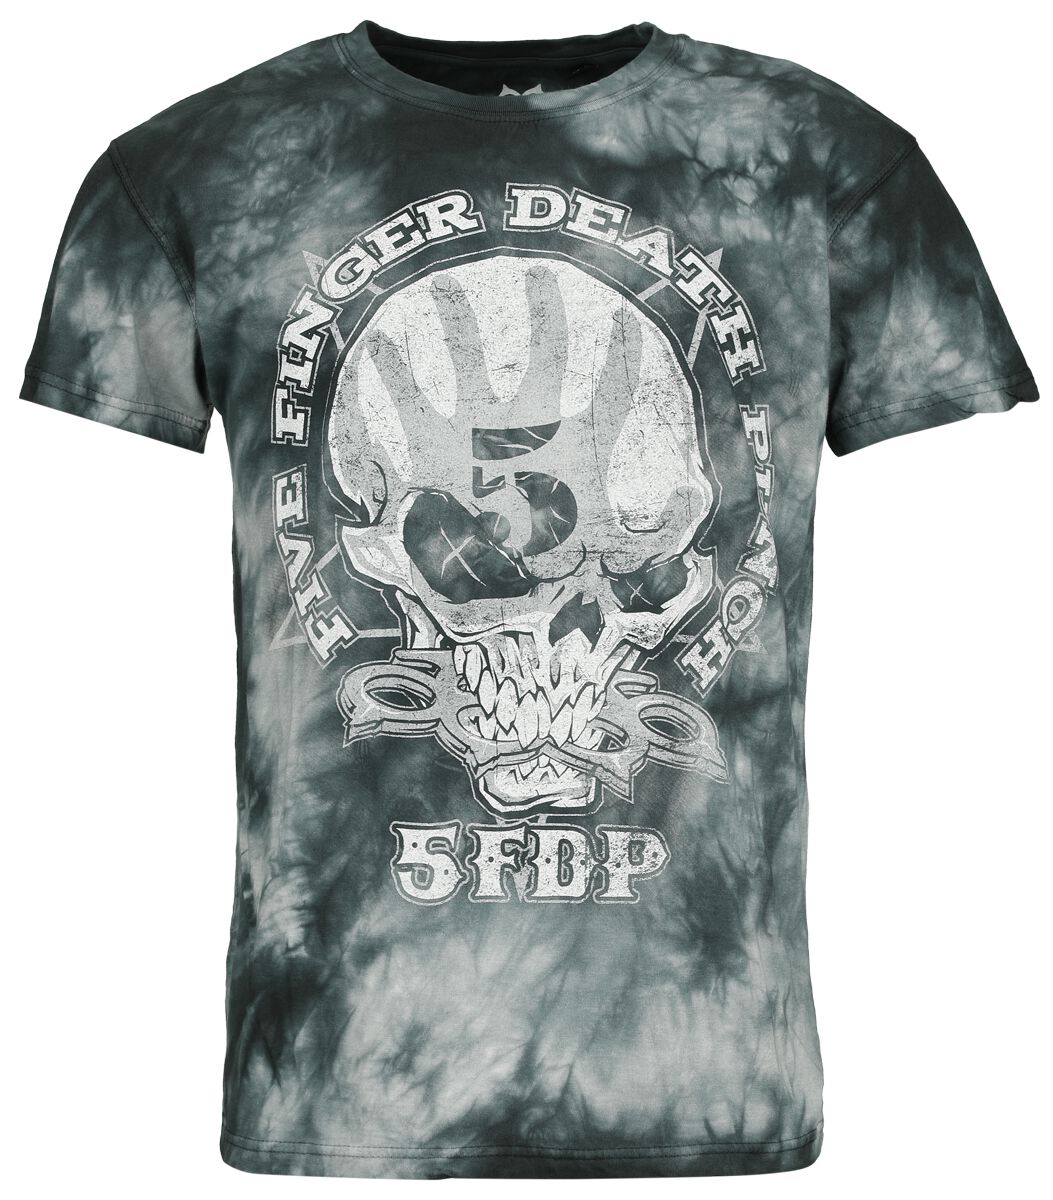 Five Finger Death Punch T-Shirt - 1 2 F U - S bis M - für Männer - Größe S - grau  - Lizenziertes Merchandise!